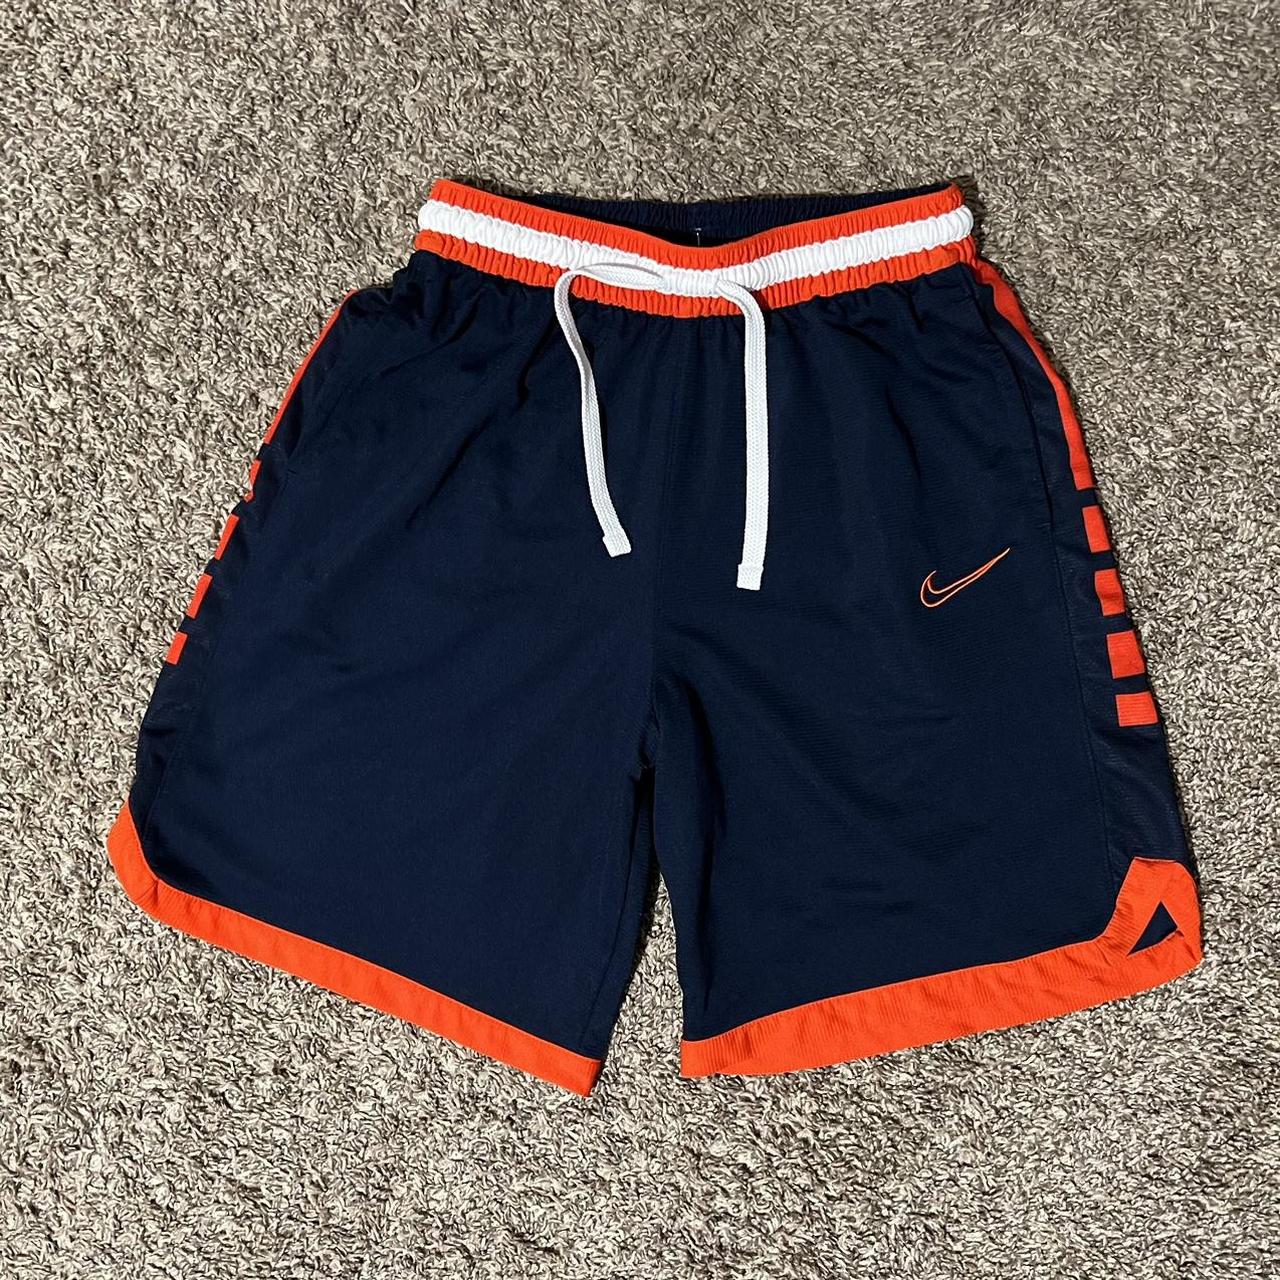 Nike Men's Orange and Navy Shorts | Depop